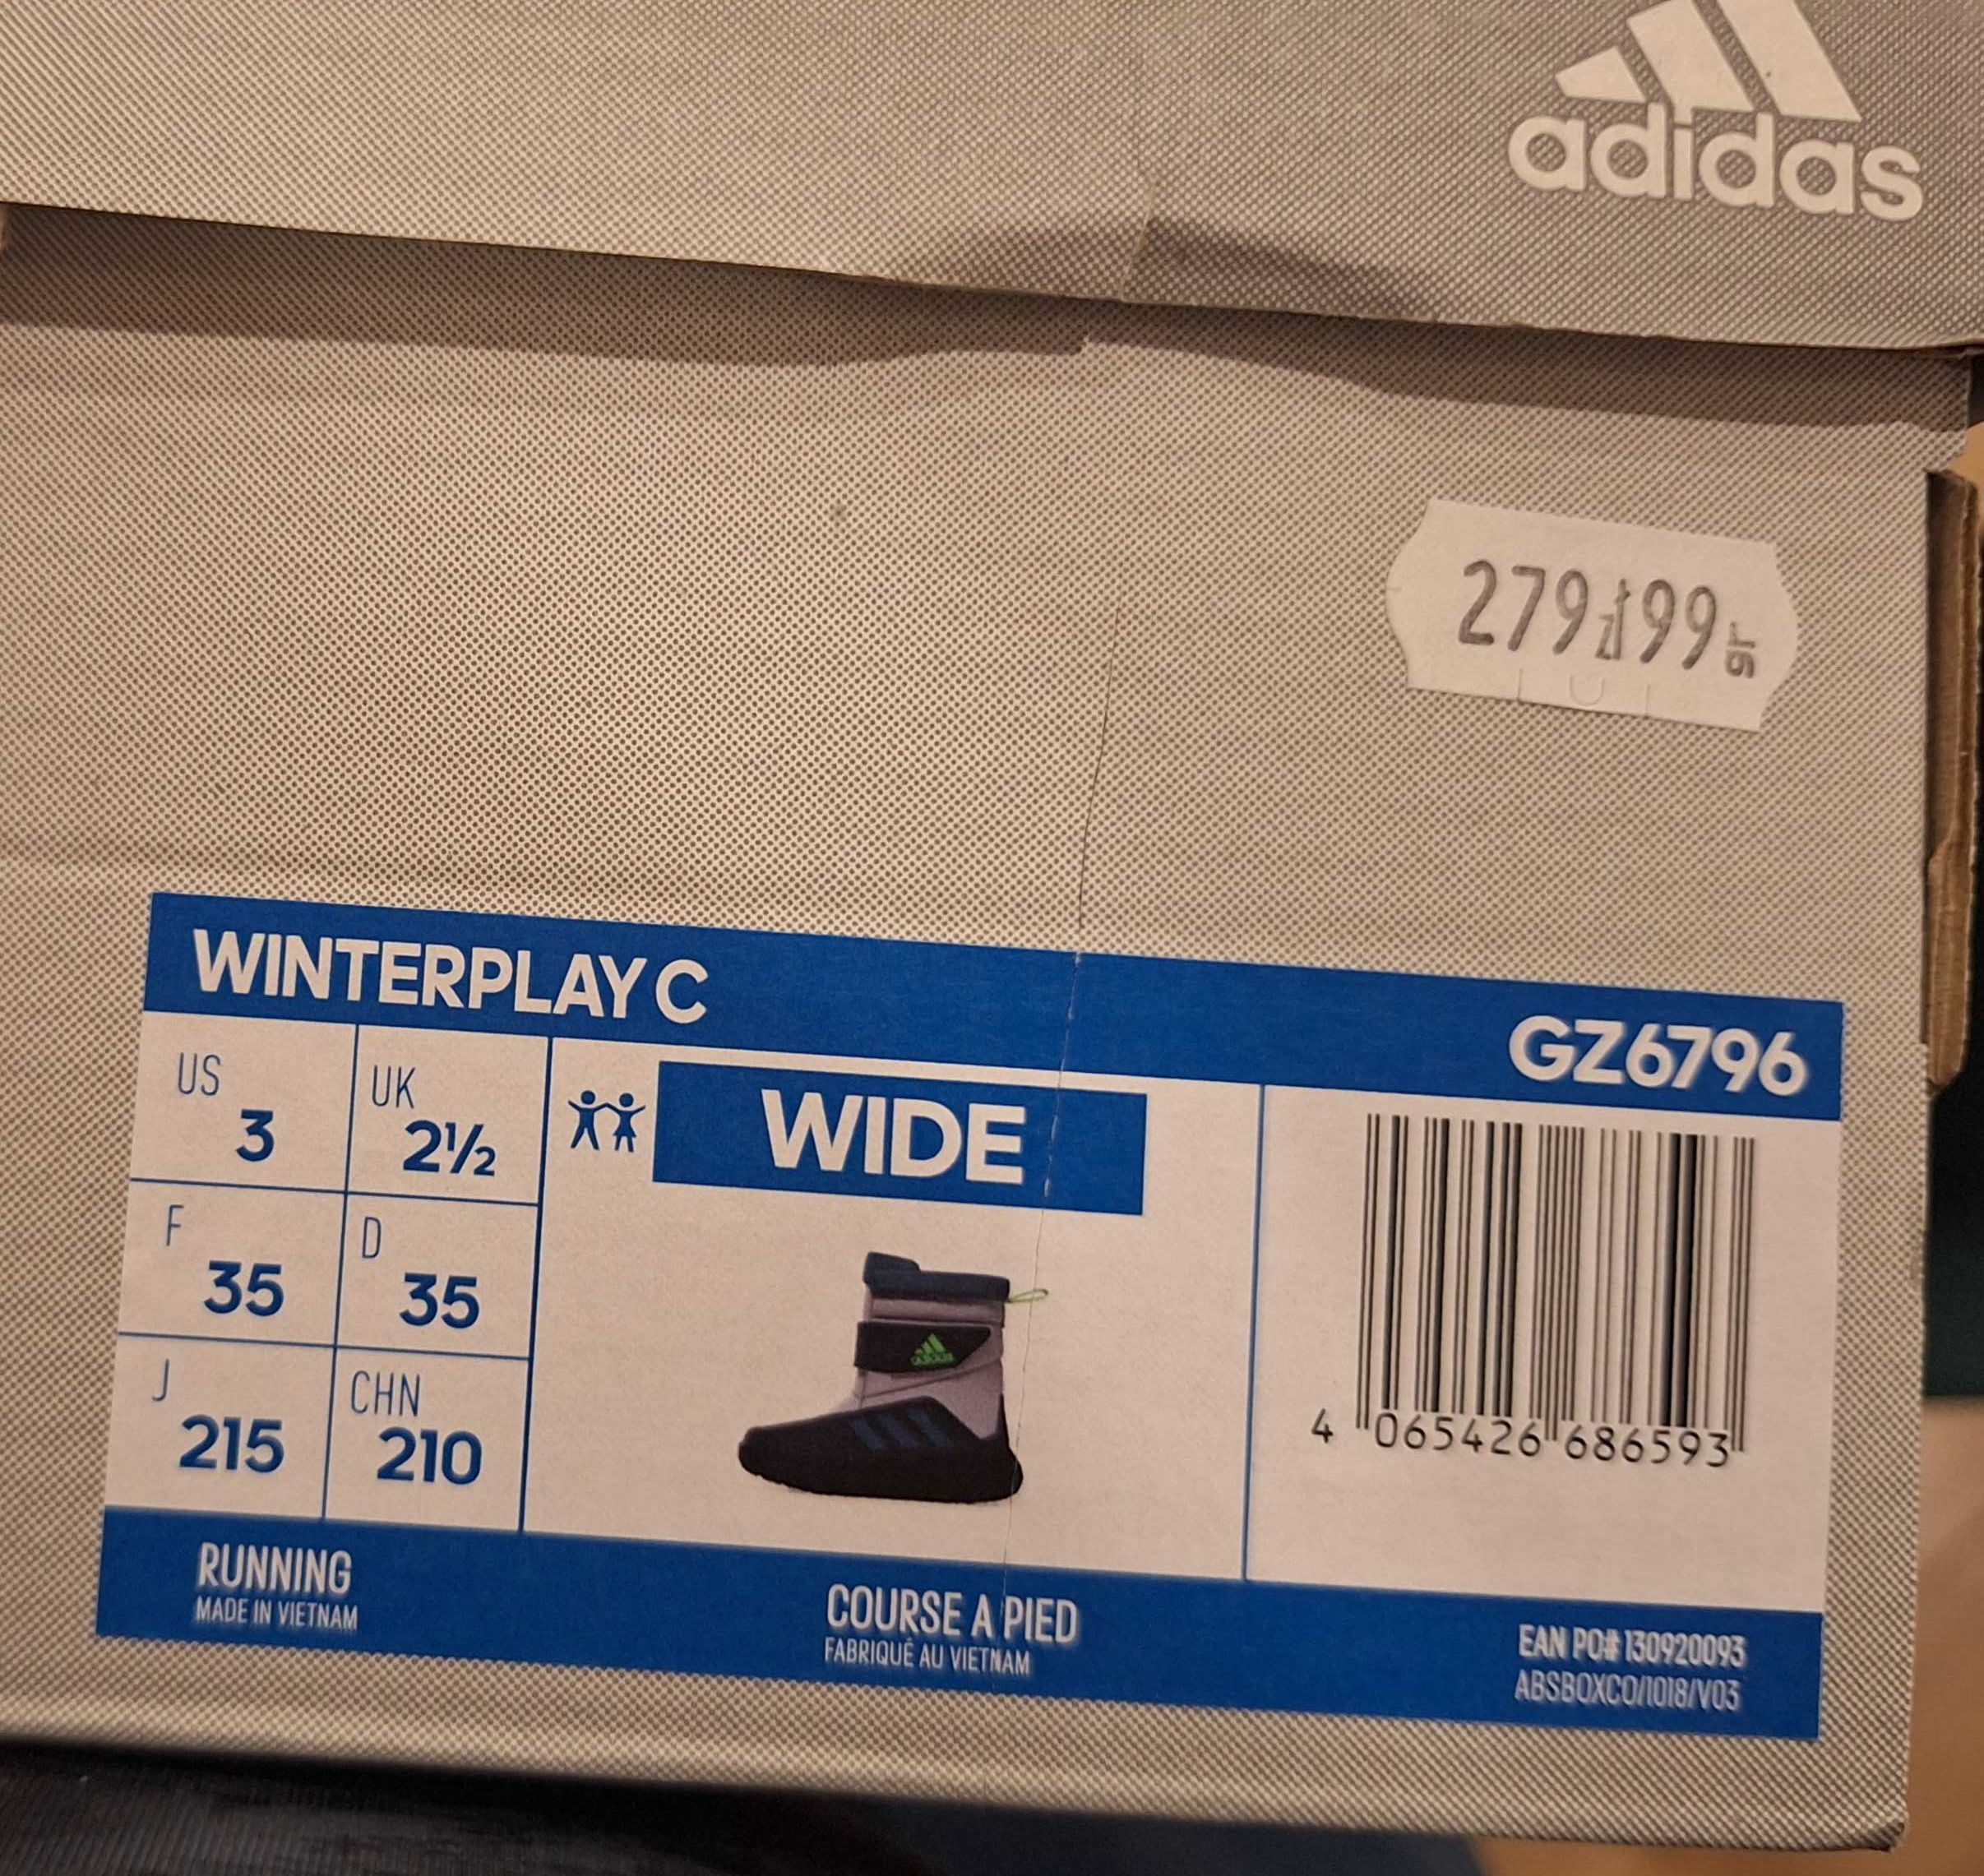 Sprzedam zimowe buty na rzepy dla chłopca Adidas. Idealne